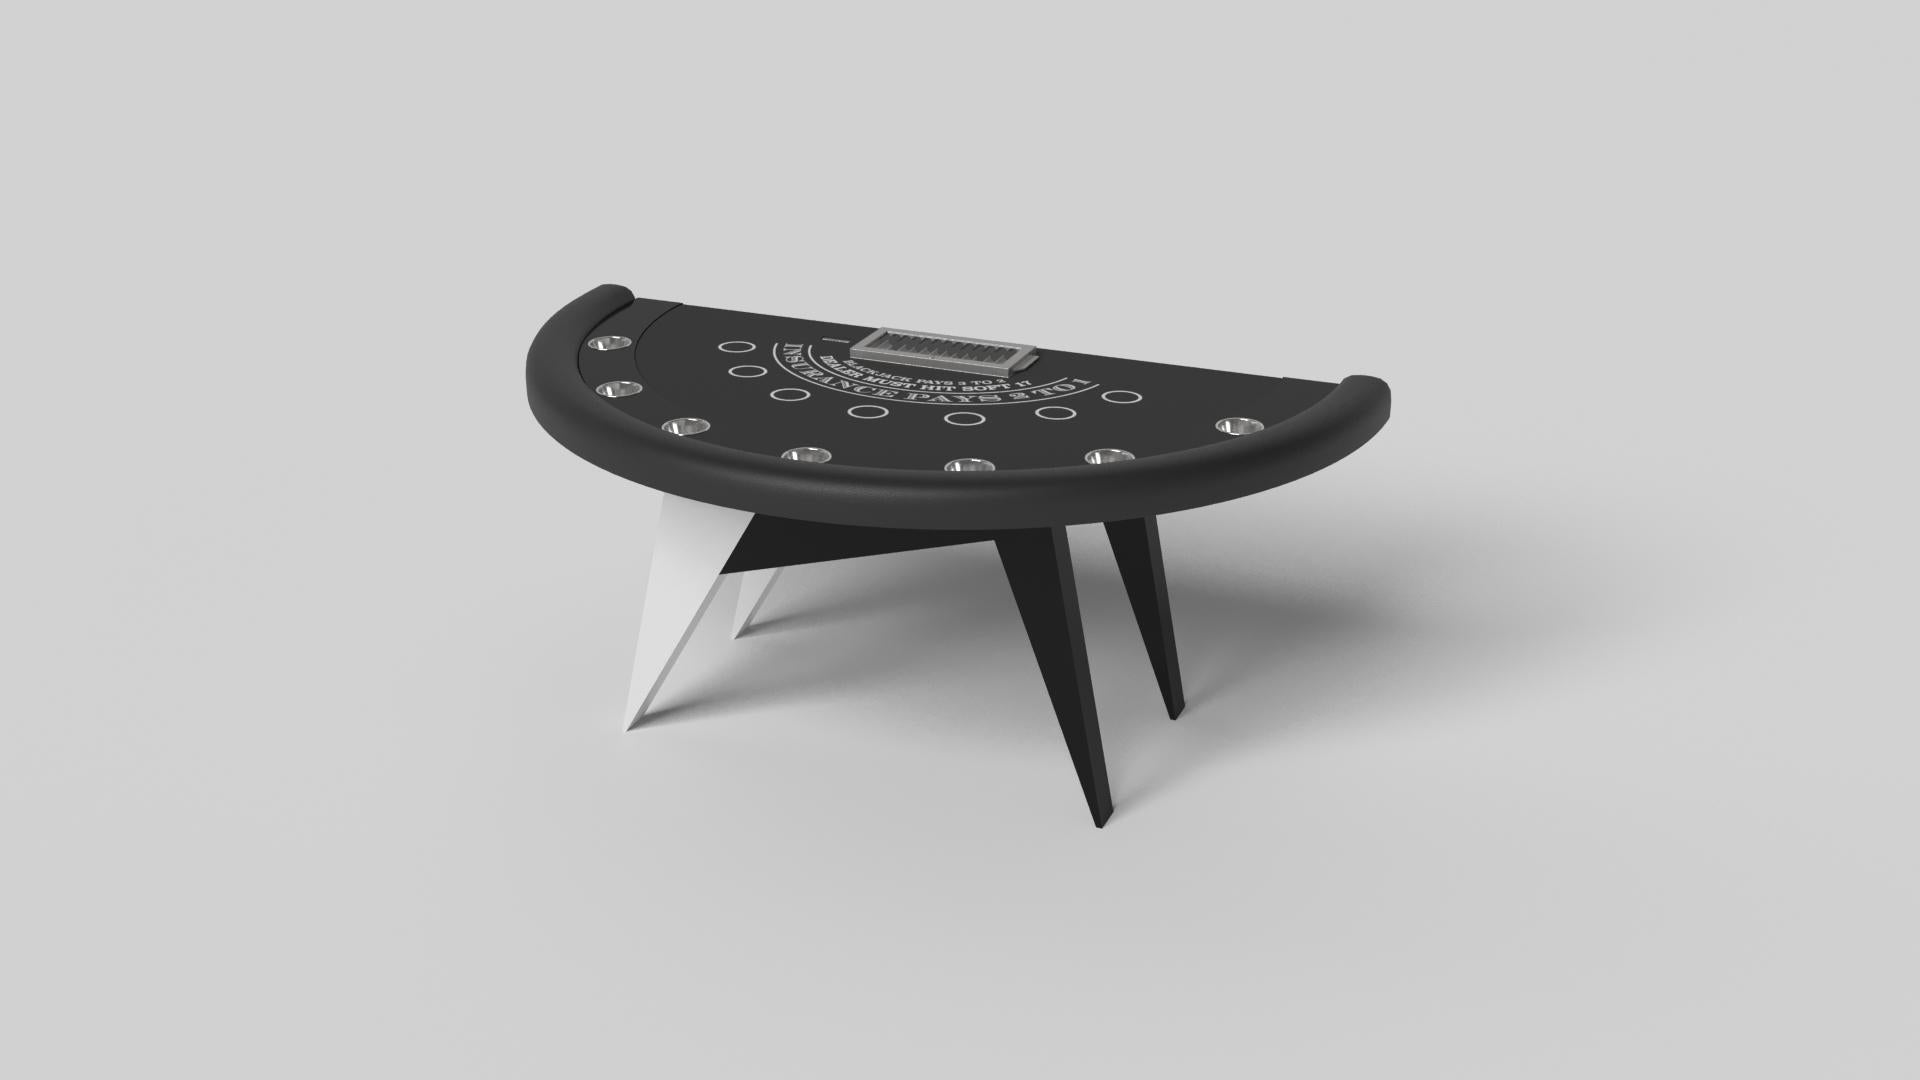 Simple mais sophistiquée, la table de blackjack Mantis apporte une touche de fraîcheur et de modernité à un design classique à quatre pattes. Les angles vifs et les pieds fuselés assurent une stabilité élégante.

Taille :

88 